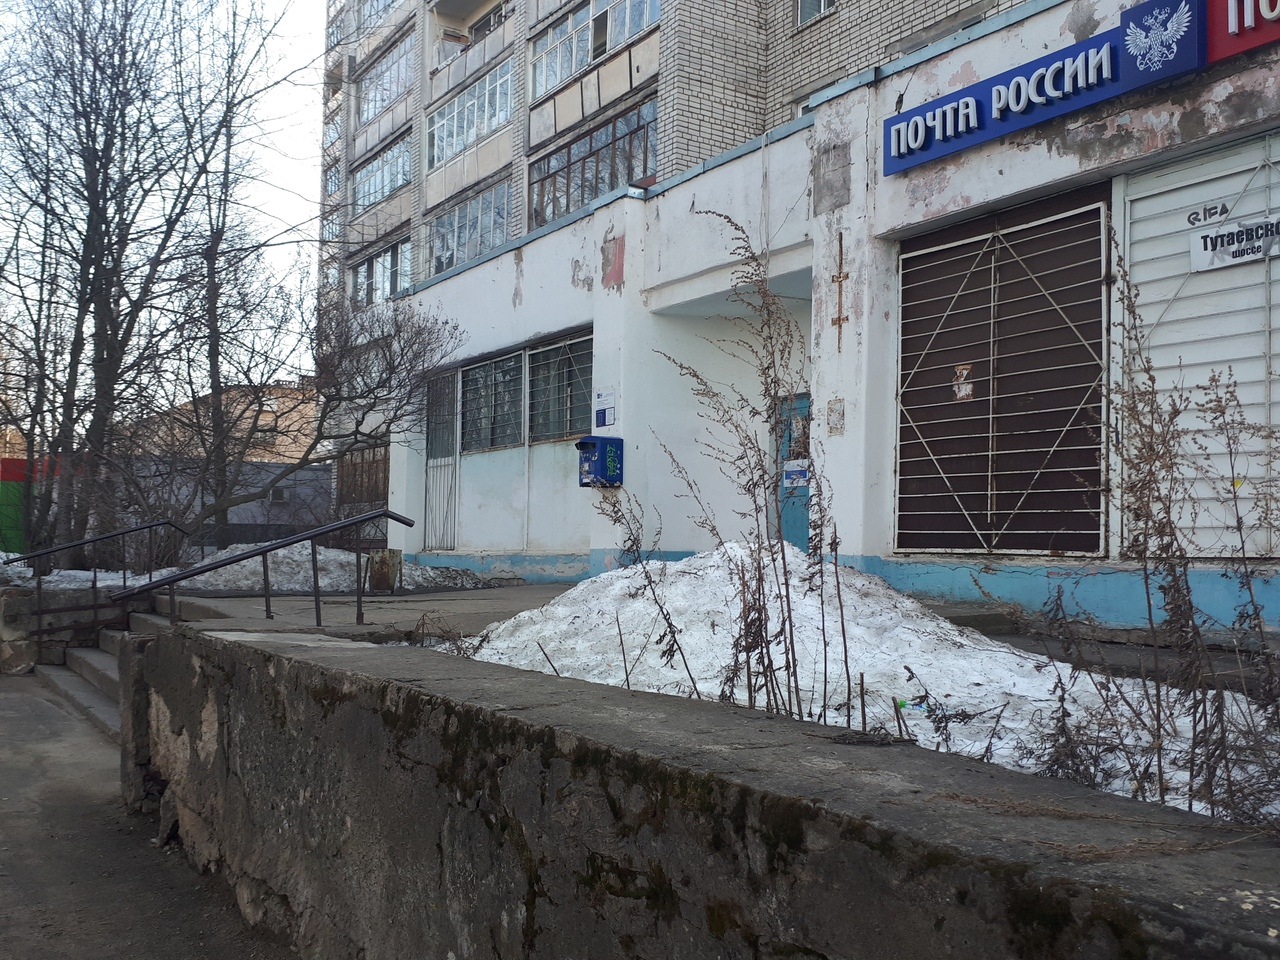 Бросали вещи и бежали: из-за тикающей посылки эвакуировали здание почты в Ярославле